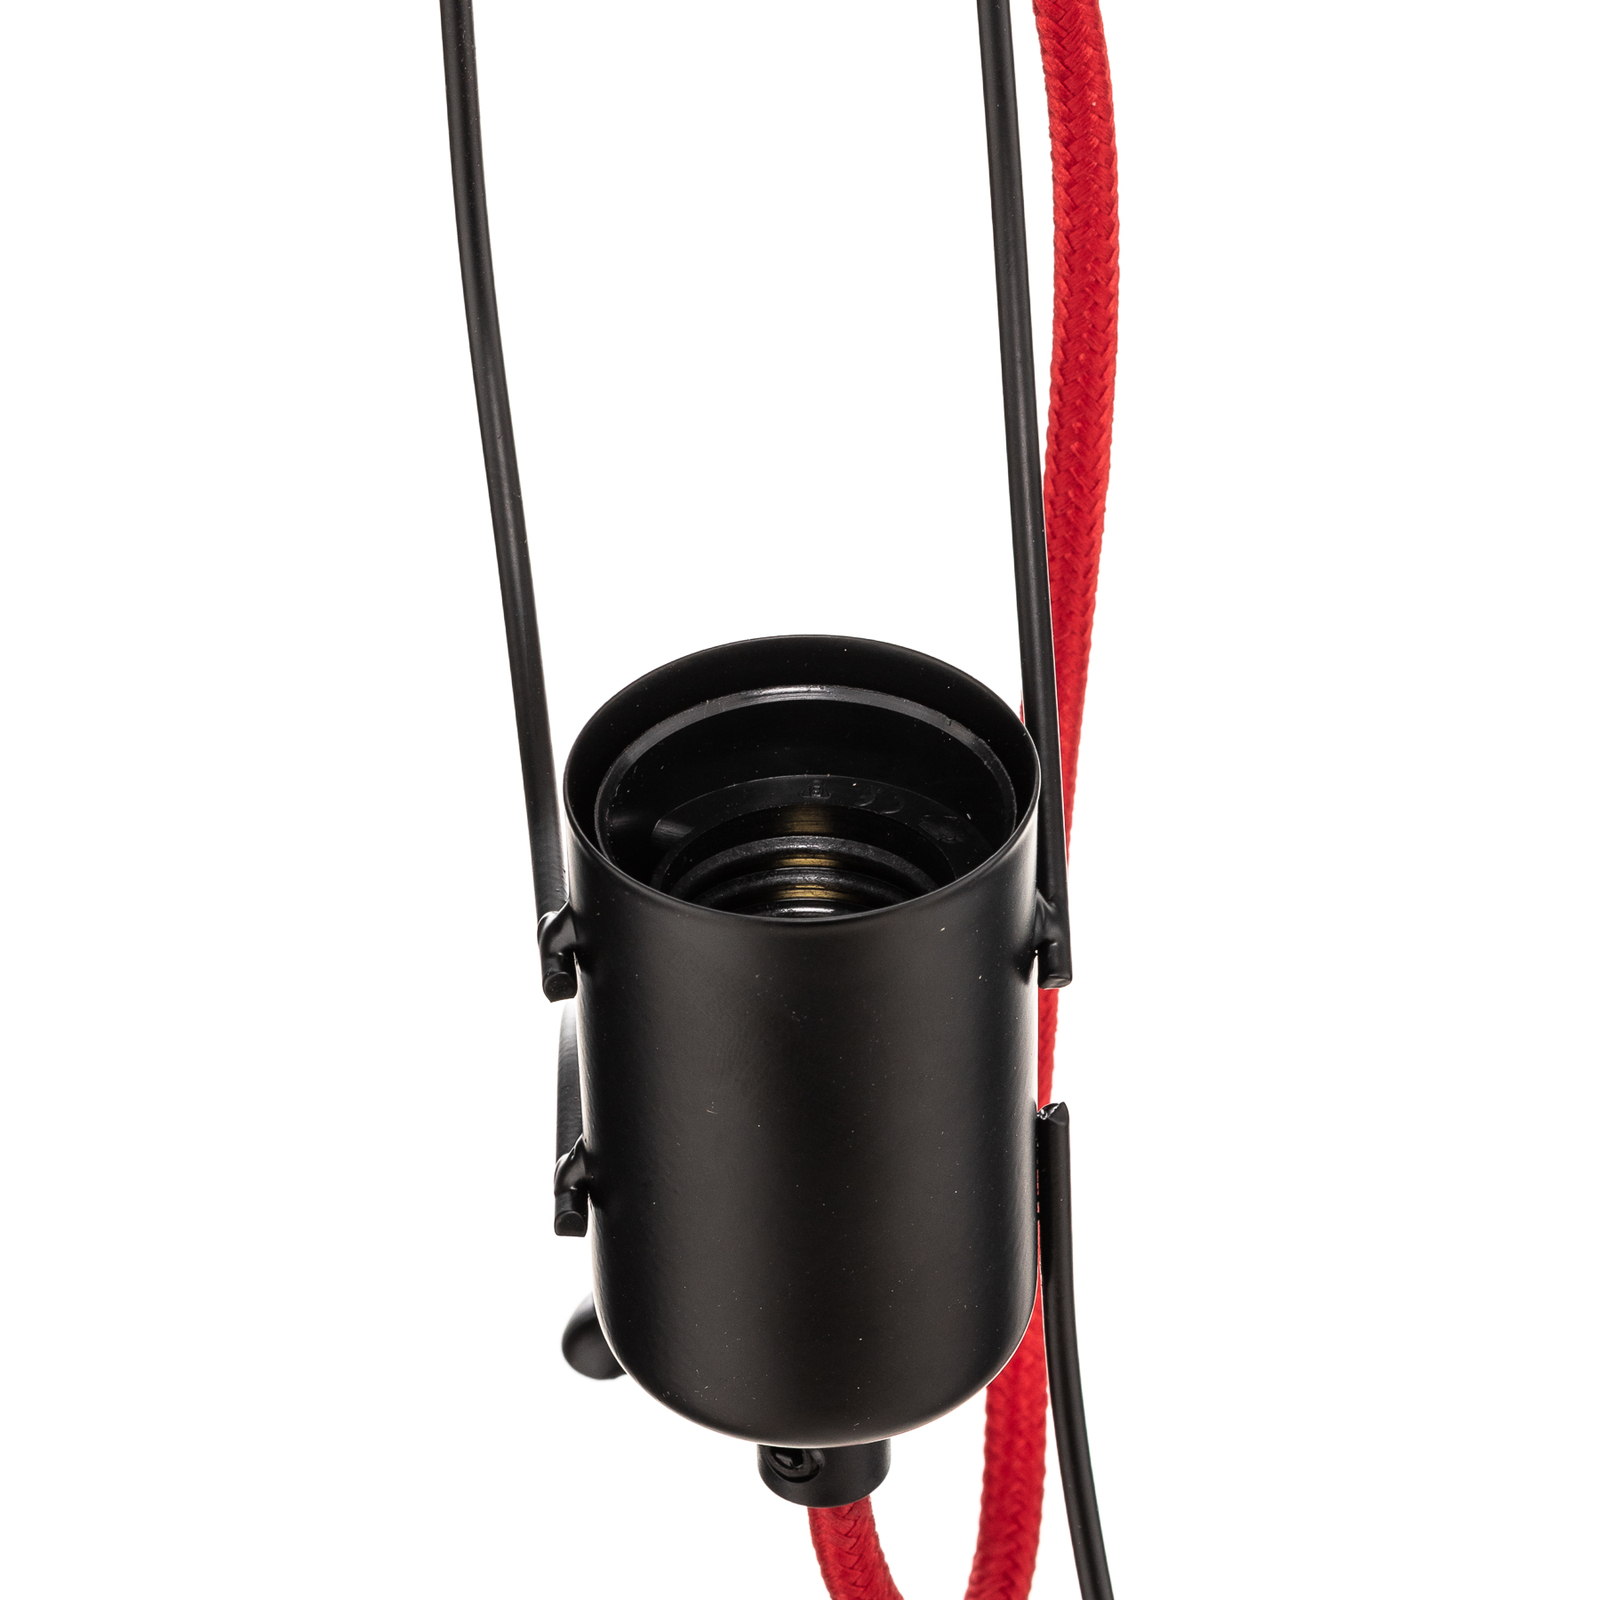 Závěsné svítidlo Bobi 3 v černé barvě, červený kabel, 3 světla.